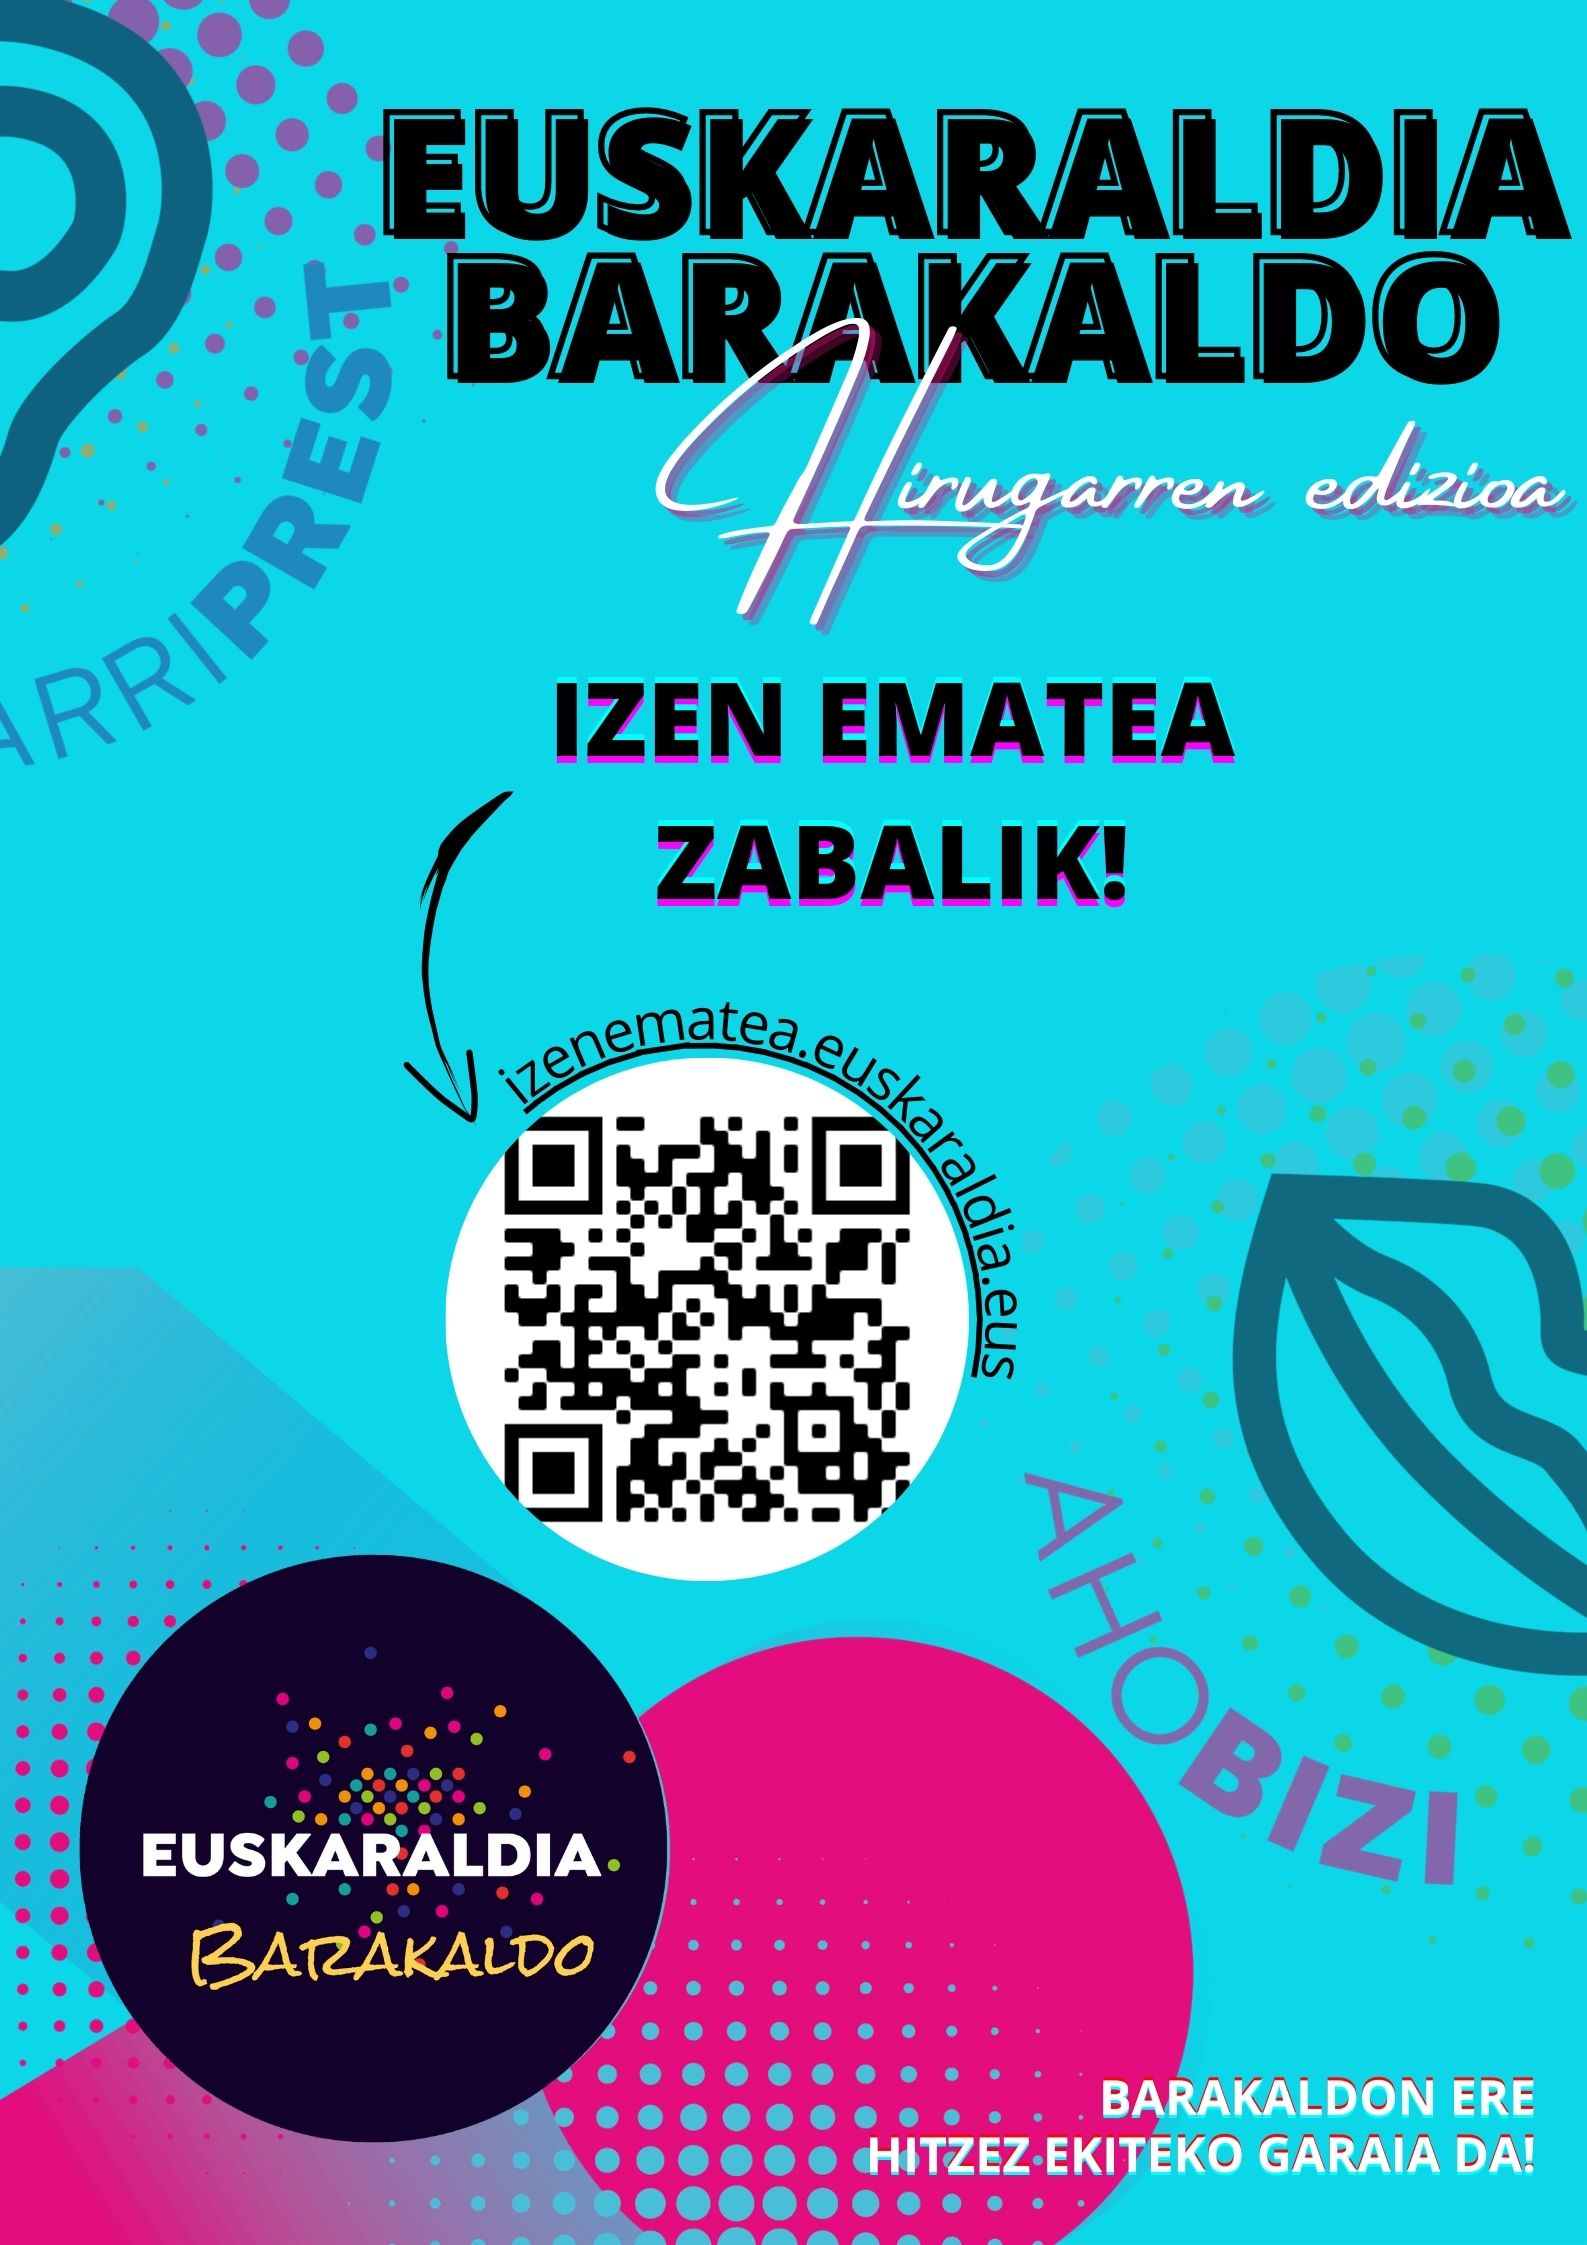 Euskaraldia Barakaldo 2022 – IZEN-EMATEA ZABALIK!